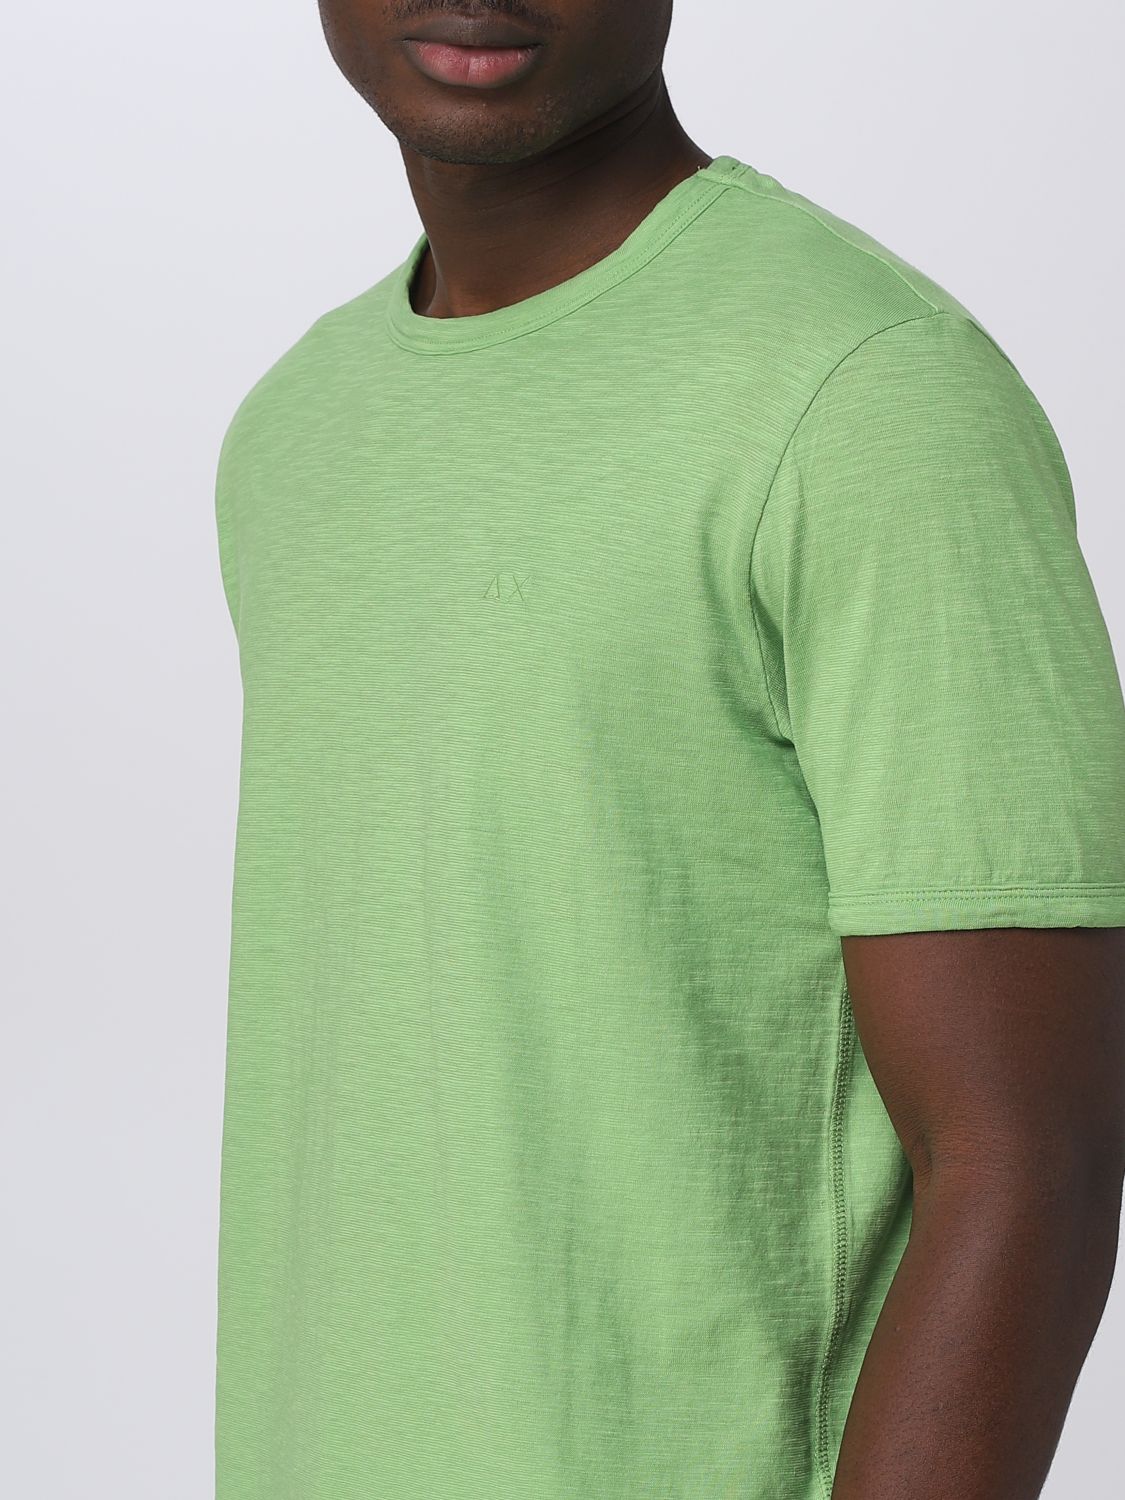 SUN 68: t-shirt for man - Green | Sun 68 t-shirt T33115 online on ...